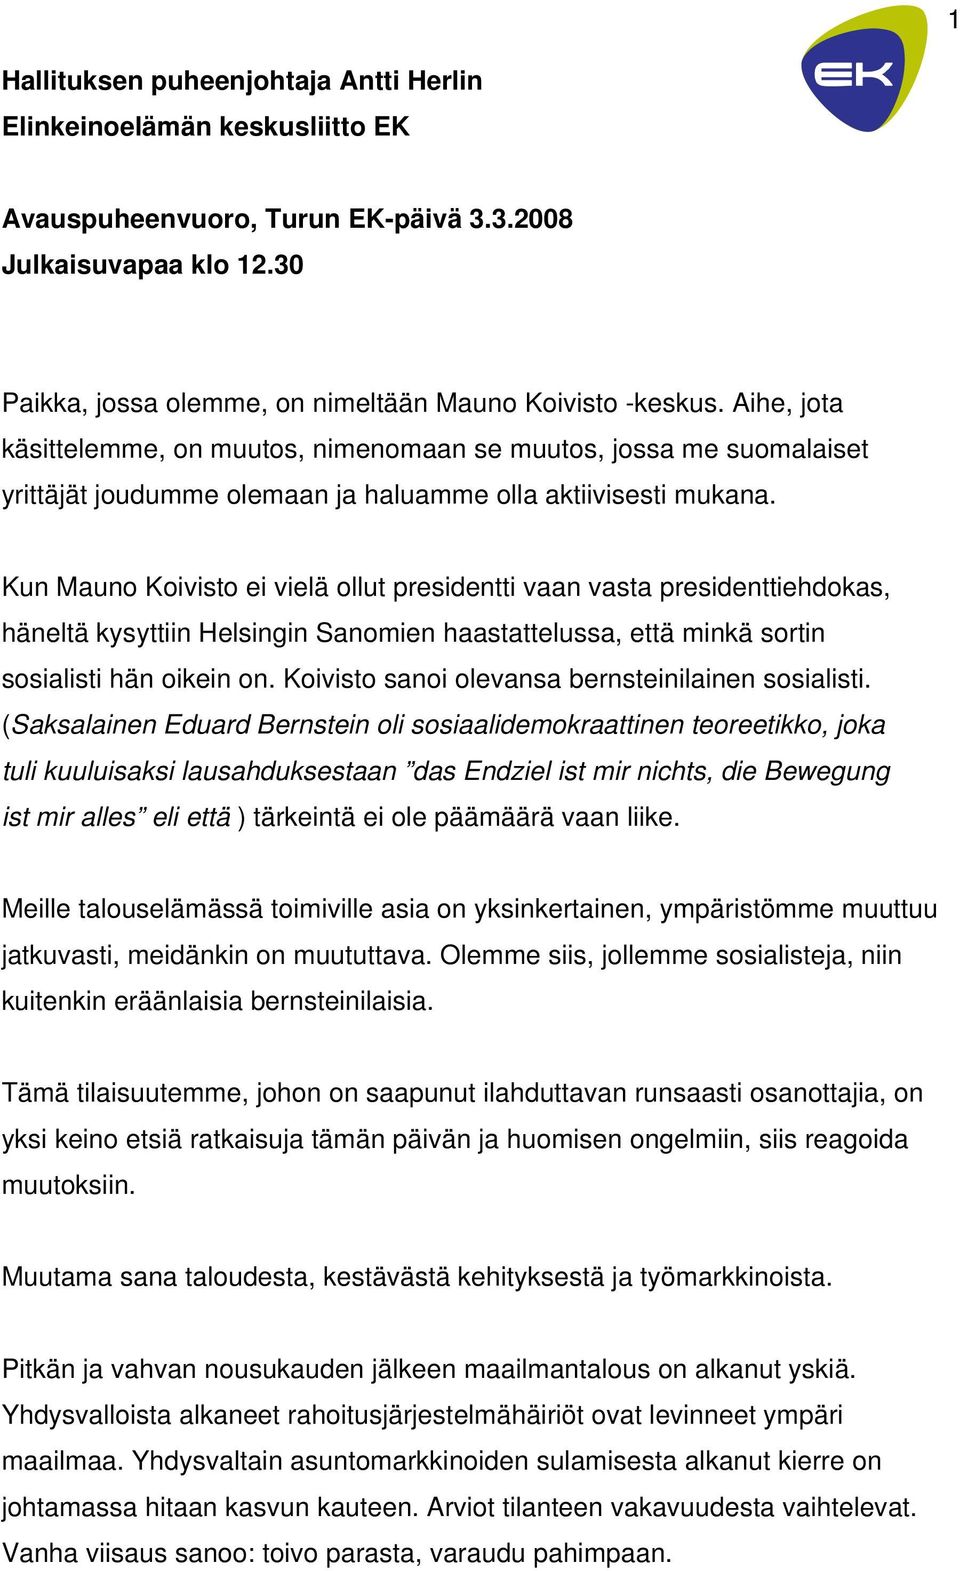 Kun Mauno Koivisto ei vielä ollut presidentti vaan vasta presidenttiehdokas, häneltä kysyttiin Helsingin Sanomien haastattelussa, että minkä sortin sosialisti hän oikein on.